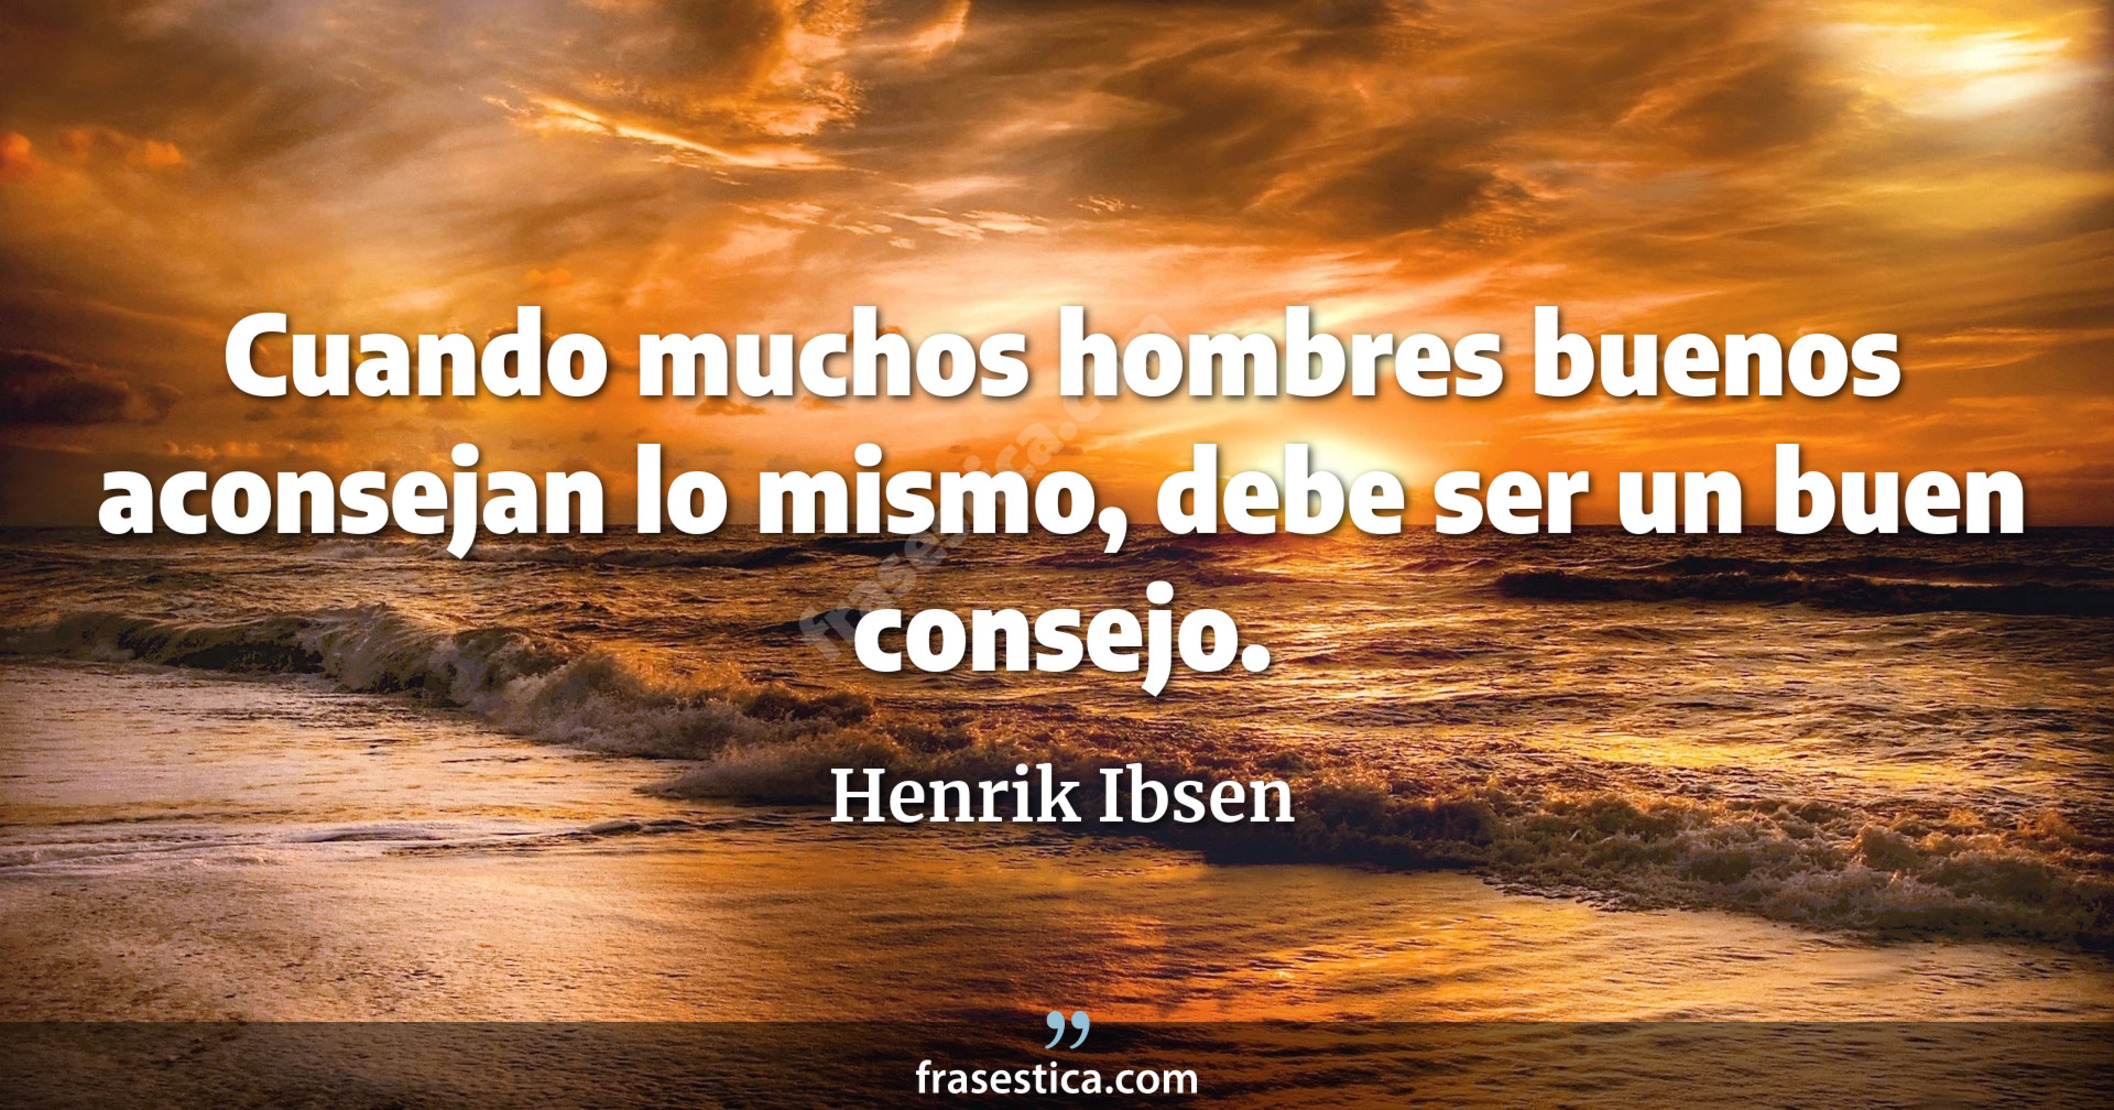 Cuando muchos hombres buenos aconsejan lo mismo, debe ser un buen consejo. - Henrik Ibsen